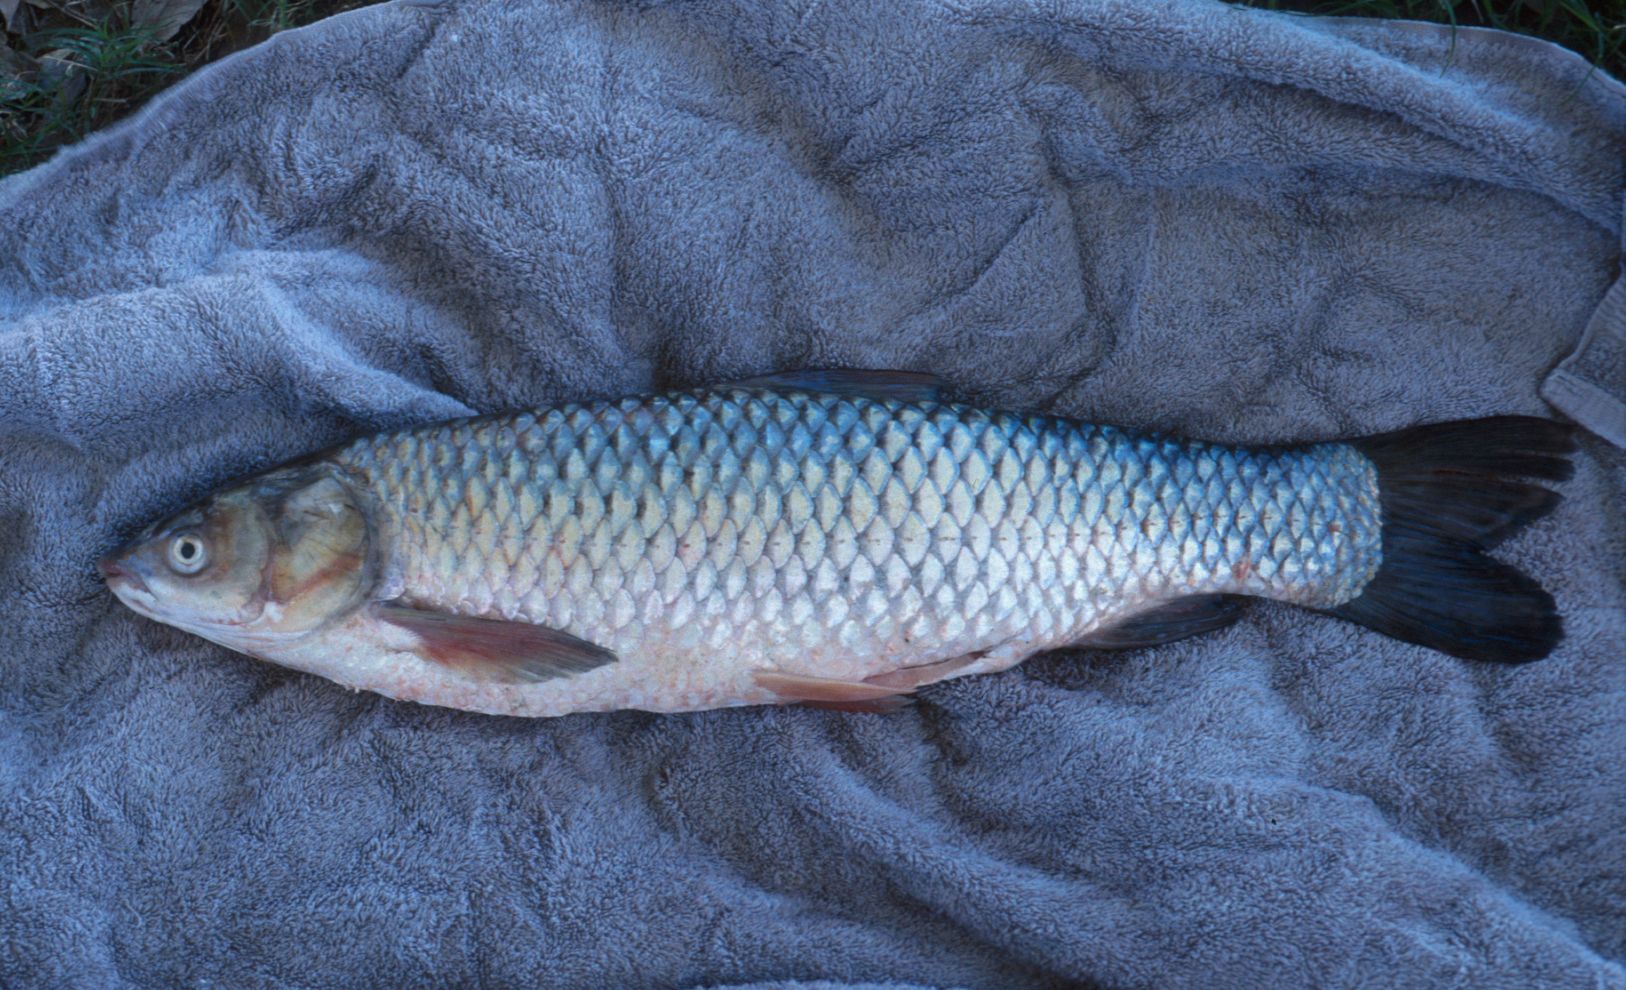 Asian carp in the missouri river